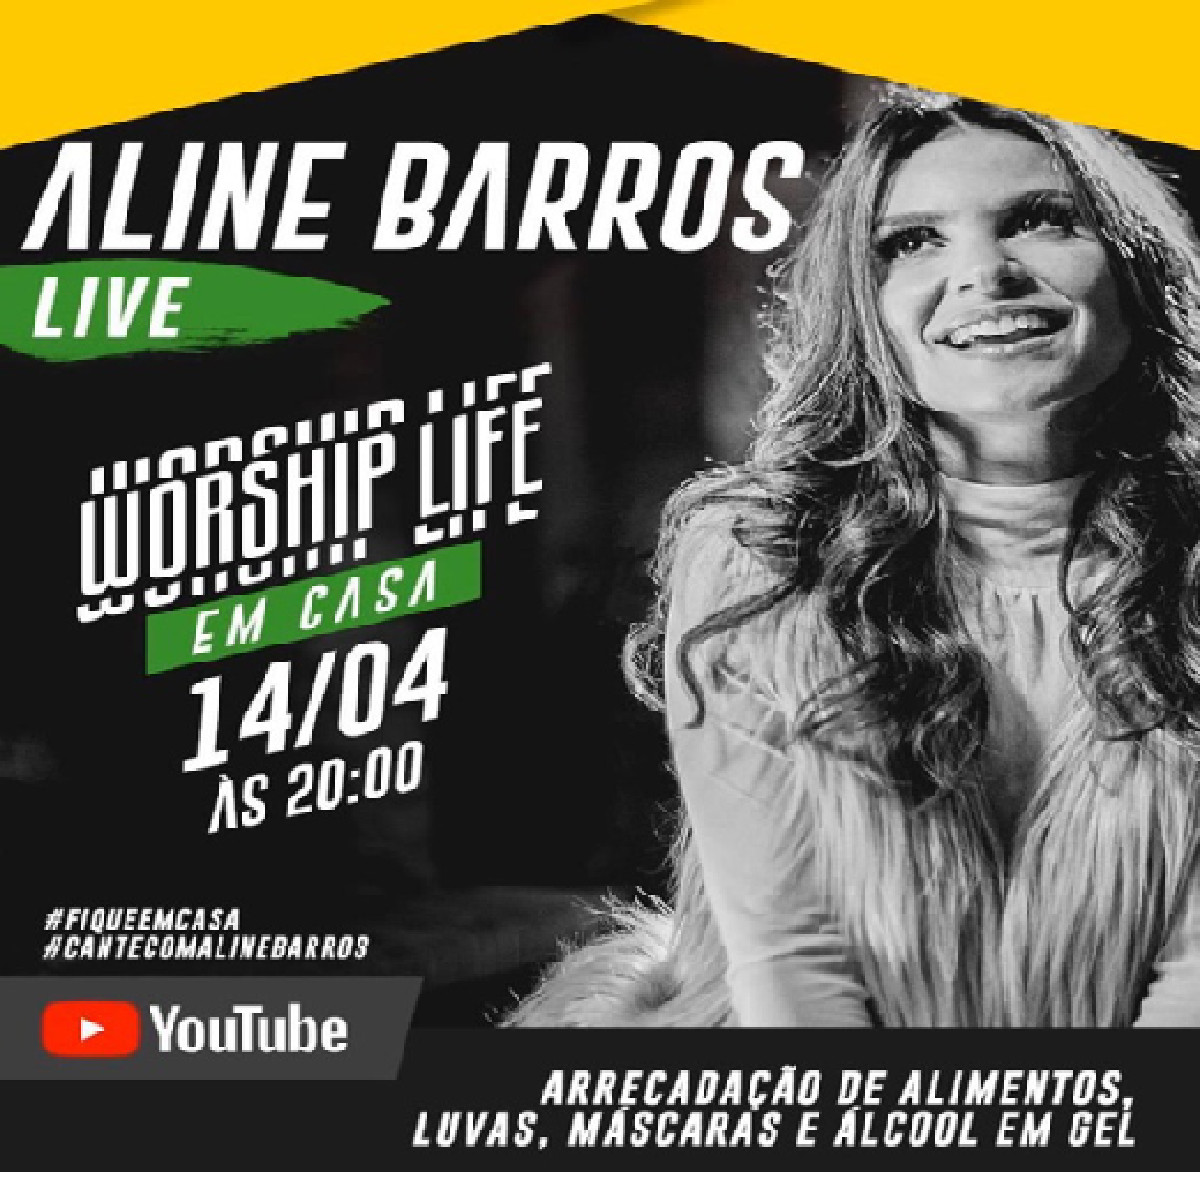 bemmaismulher.com - Aline Barros divulga que fará live: “Pra gente cantar, ajudar e abençoar as pessoas” - 14/04